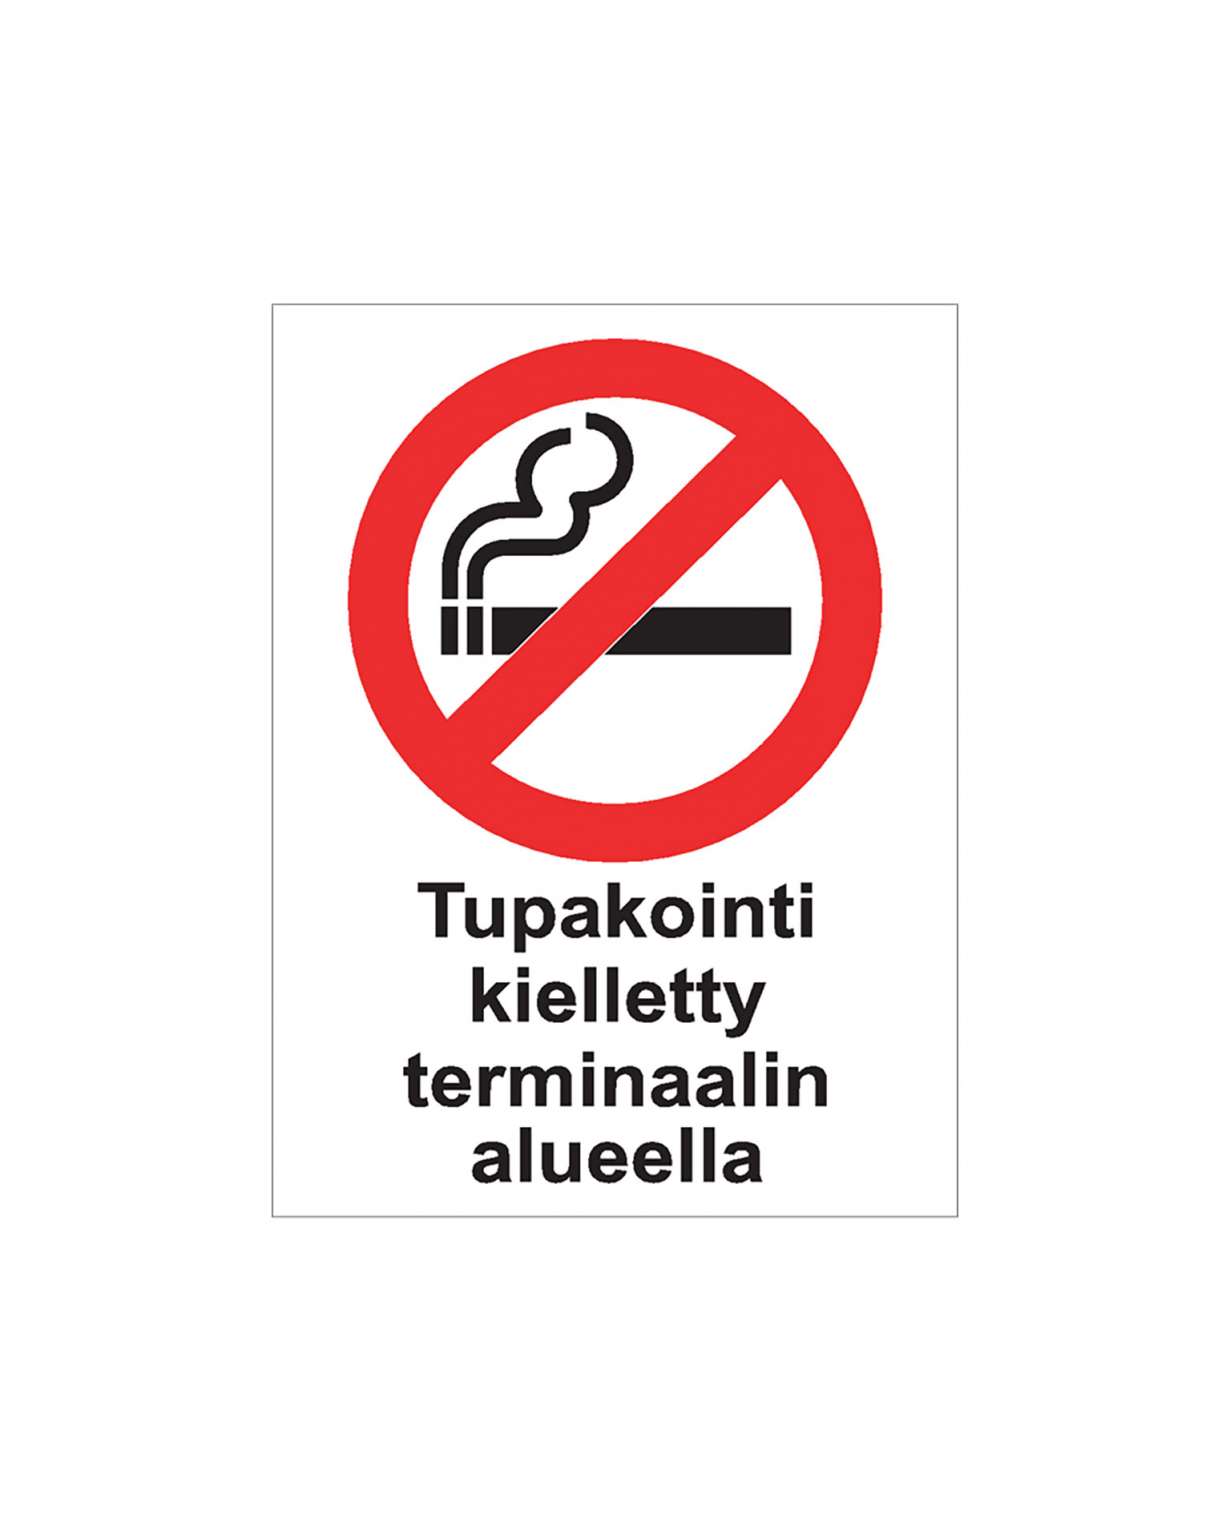 Tupakointi kielletty terminaalin alueella, Ibond alumiini, 300x400 mm